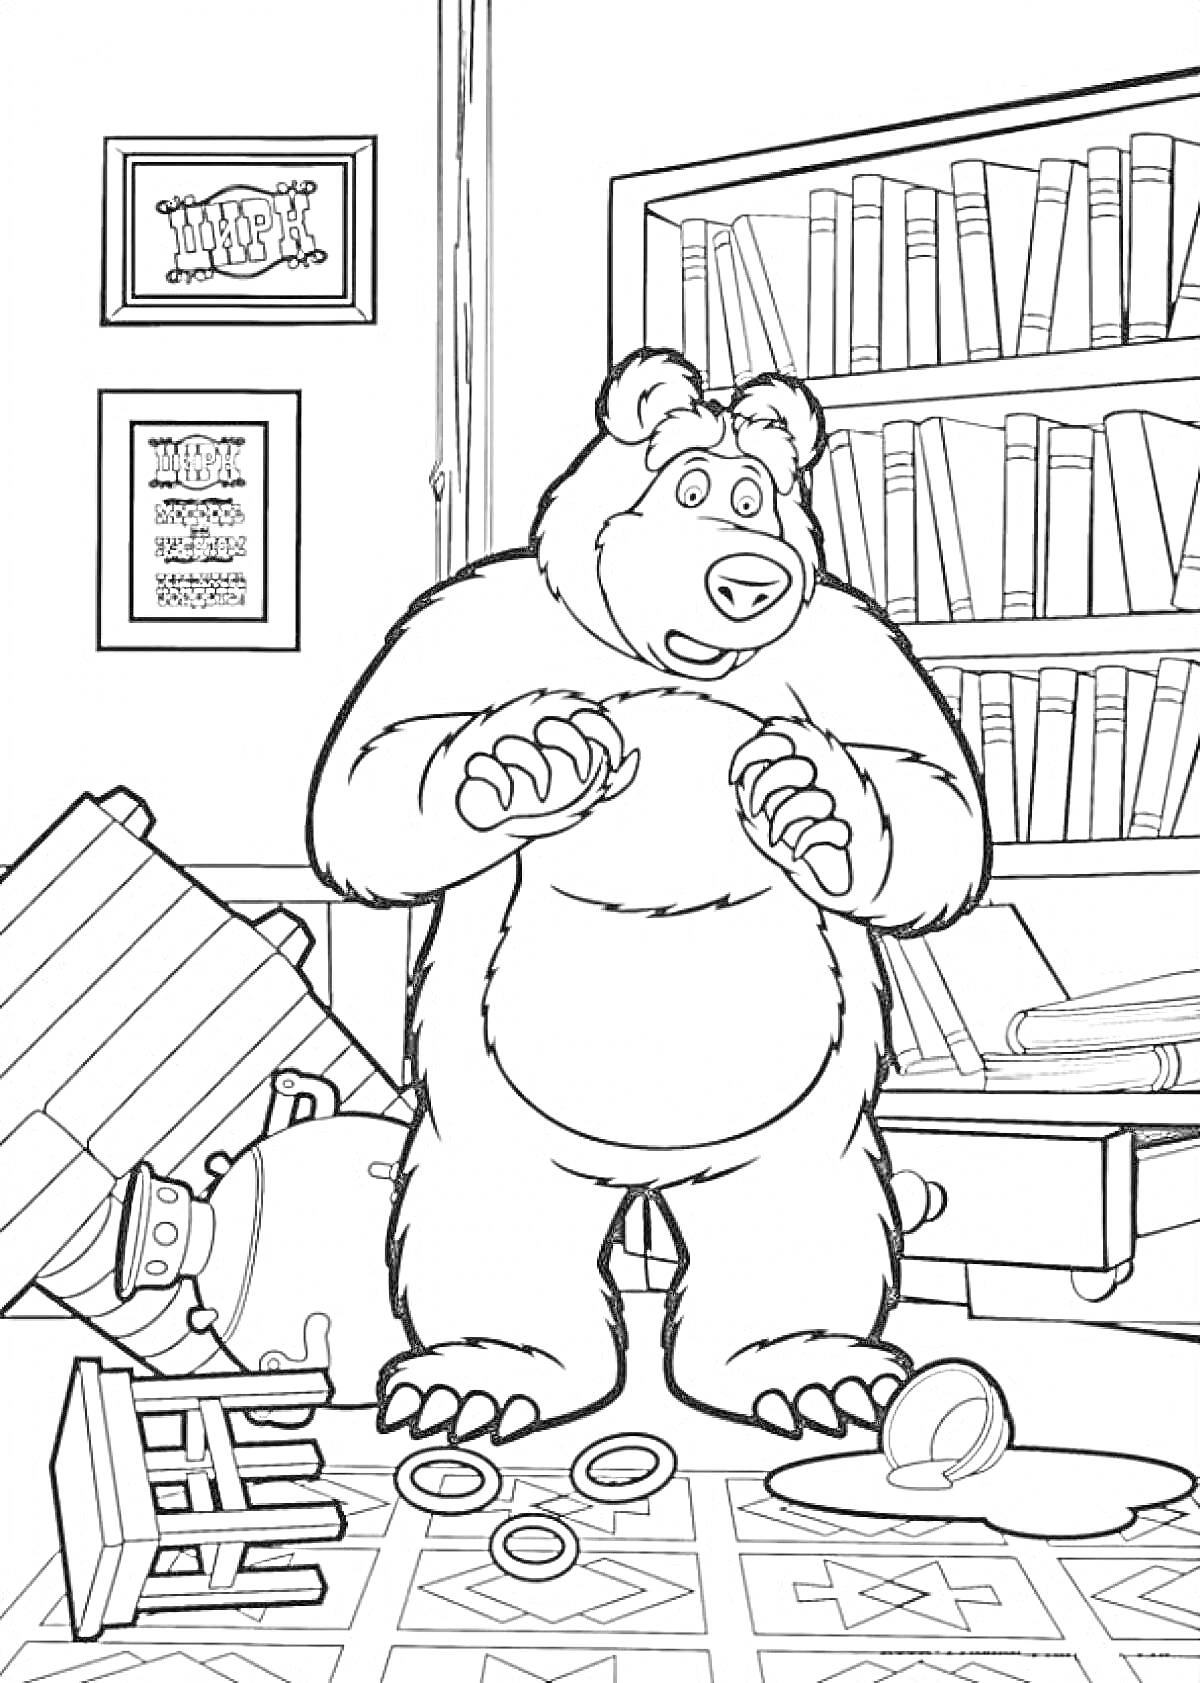 Медведь в беспорядке: перевернутые книги, кружка, кольца на полу, стул и стол завалены